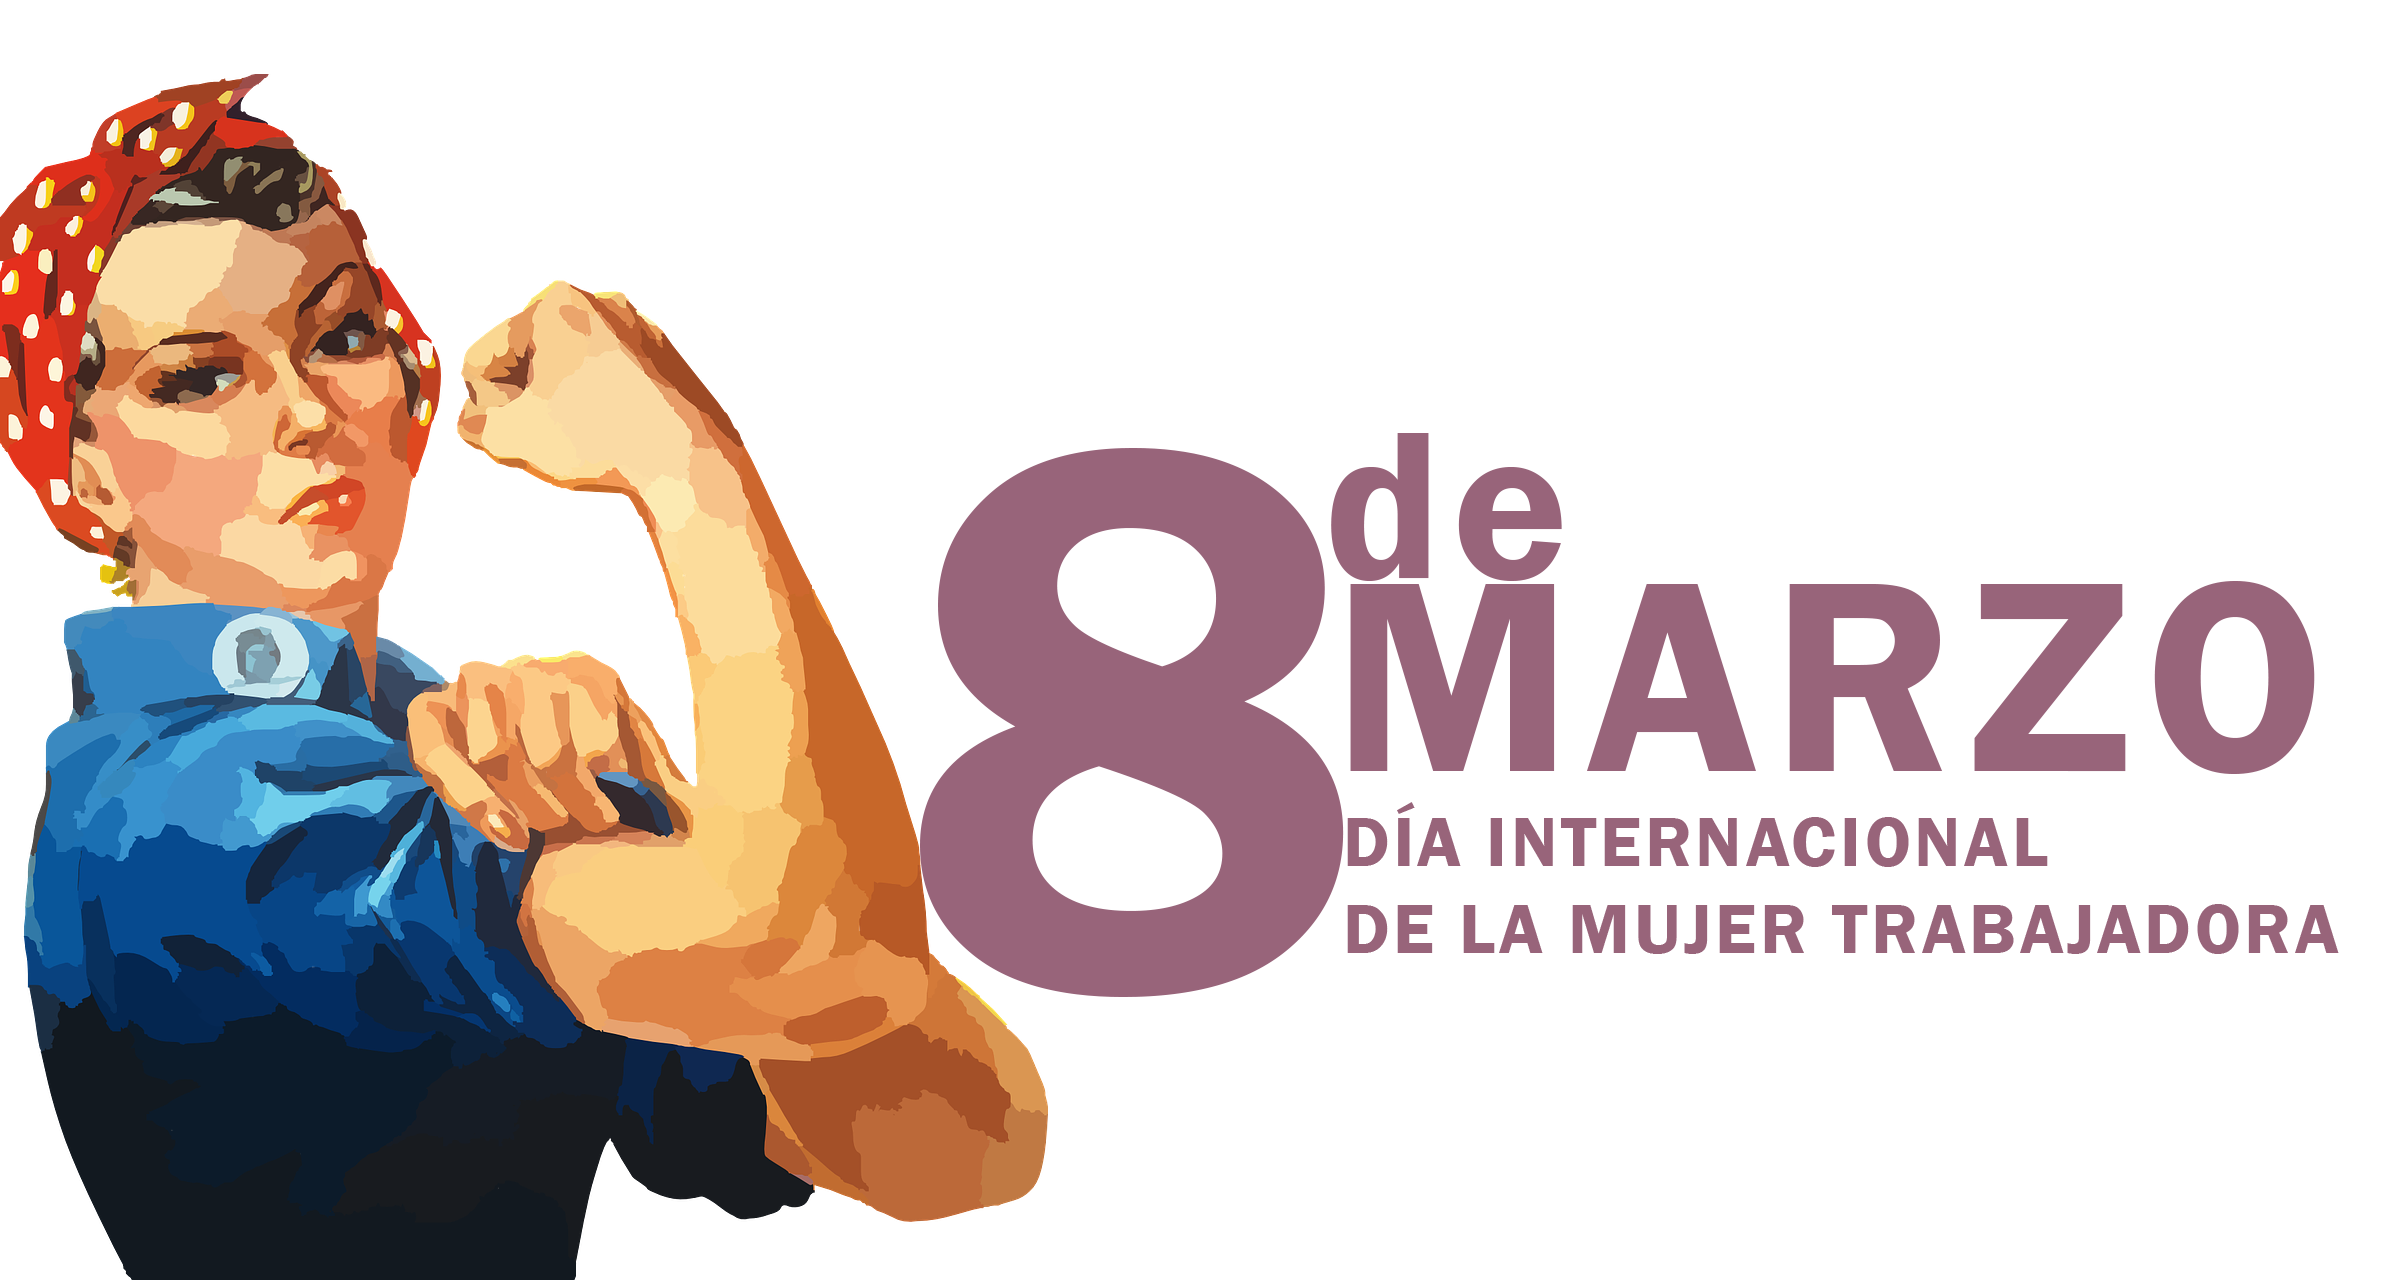 Día internacional de la mujer trabajadora 2018